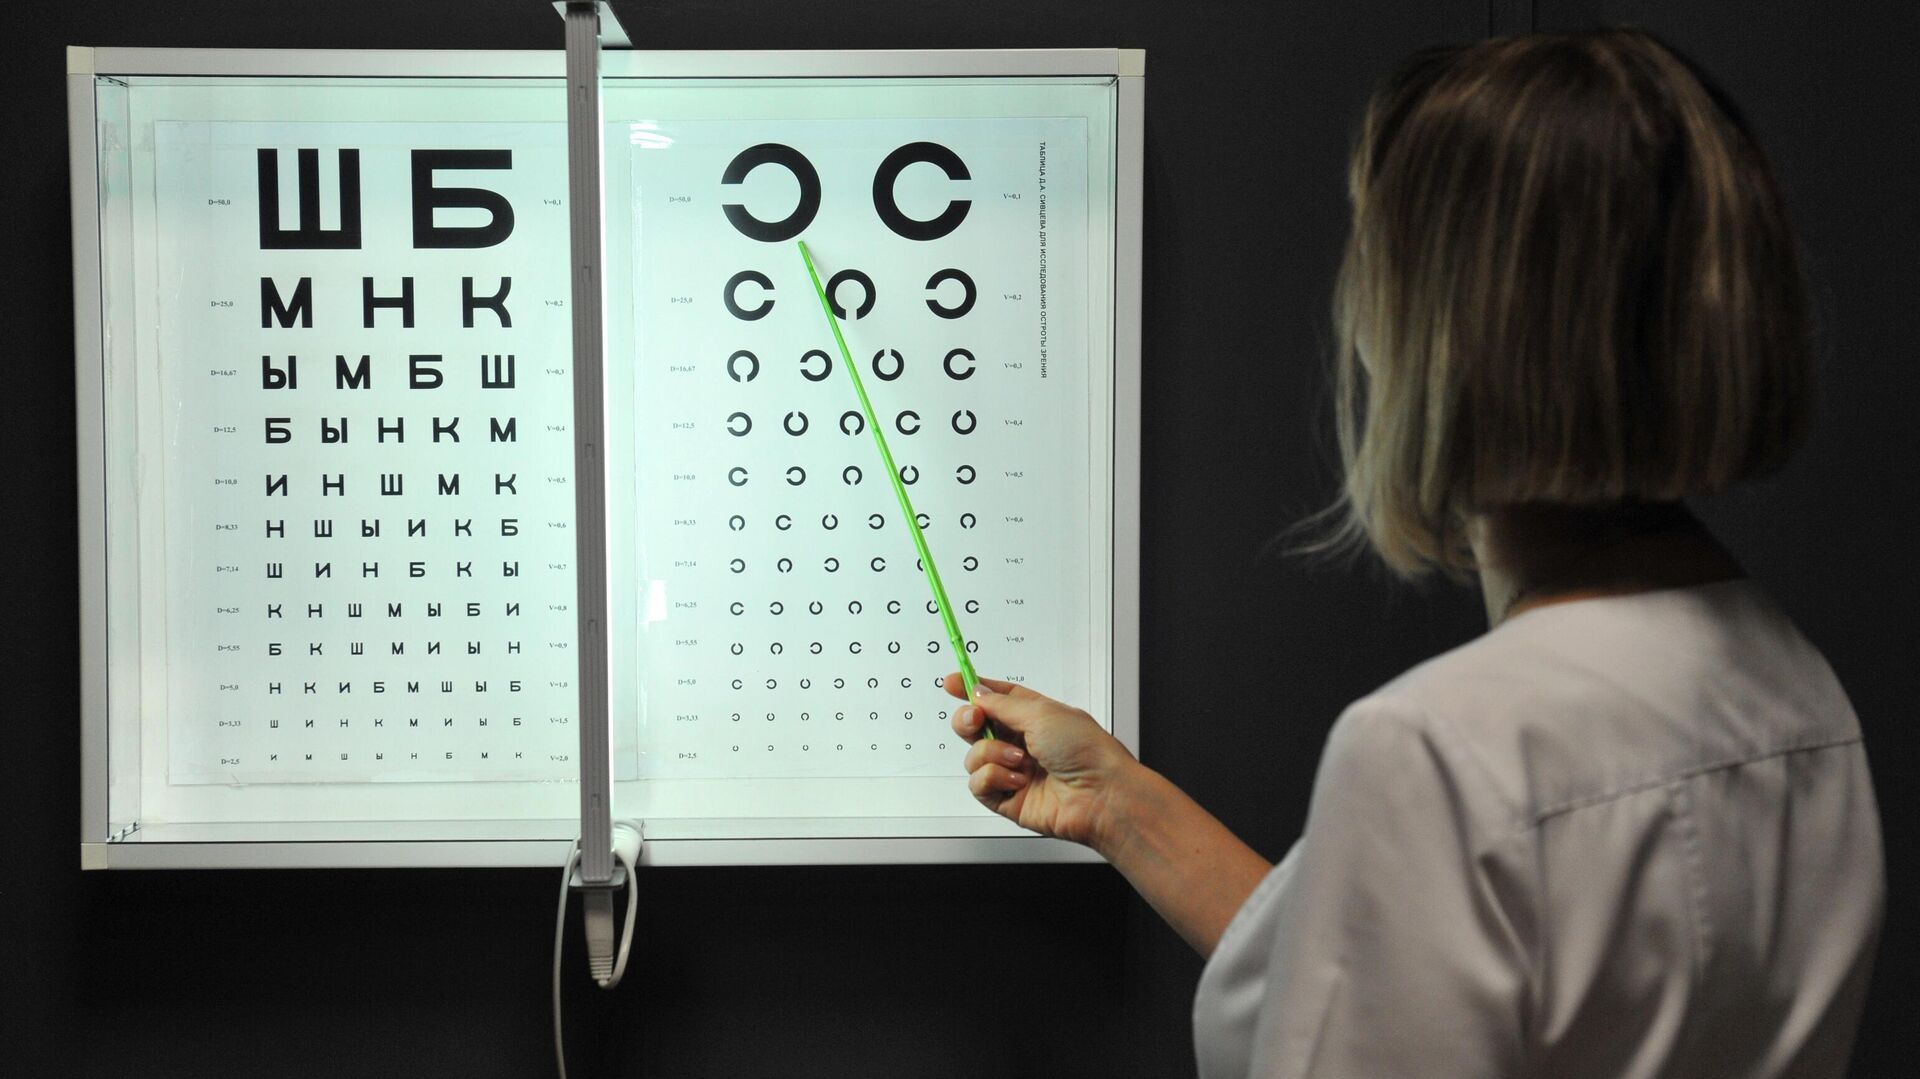 Таблица Сивцева для проверки остроты зрения в кабинете офтальмолога - РИА Новости, 1920, 01.10.2020